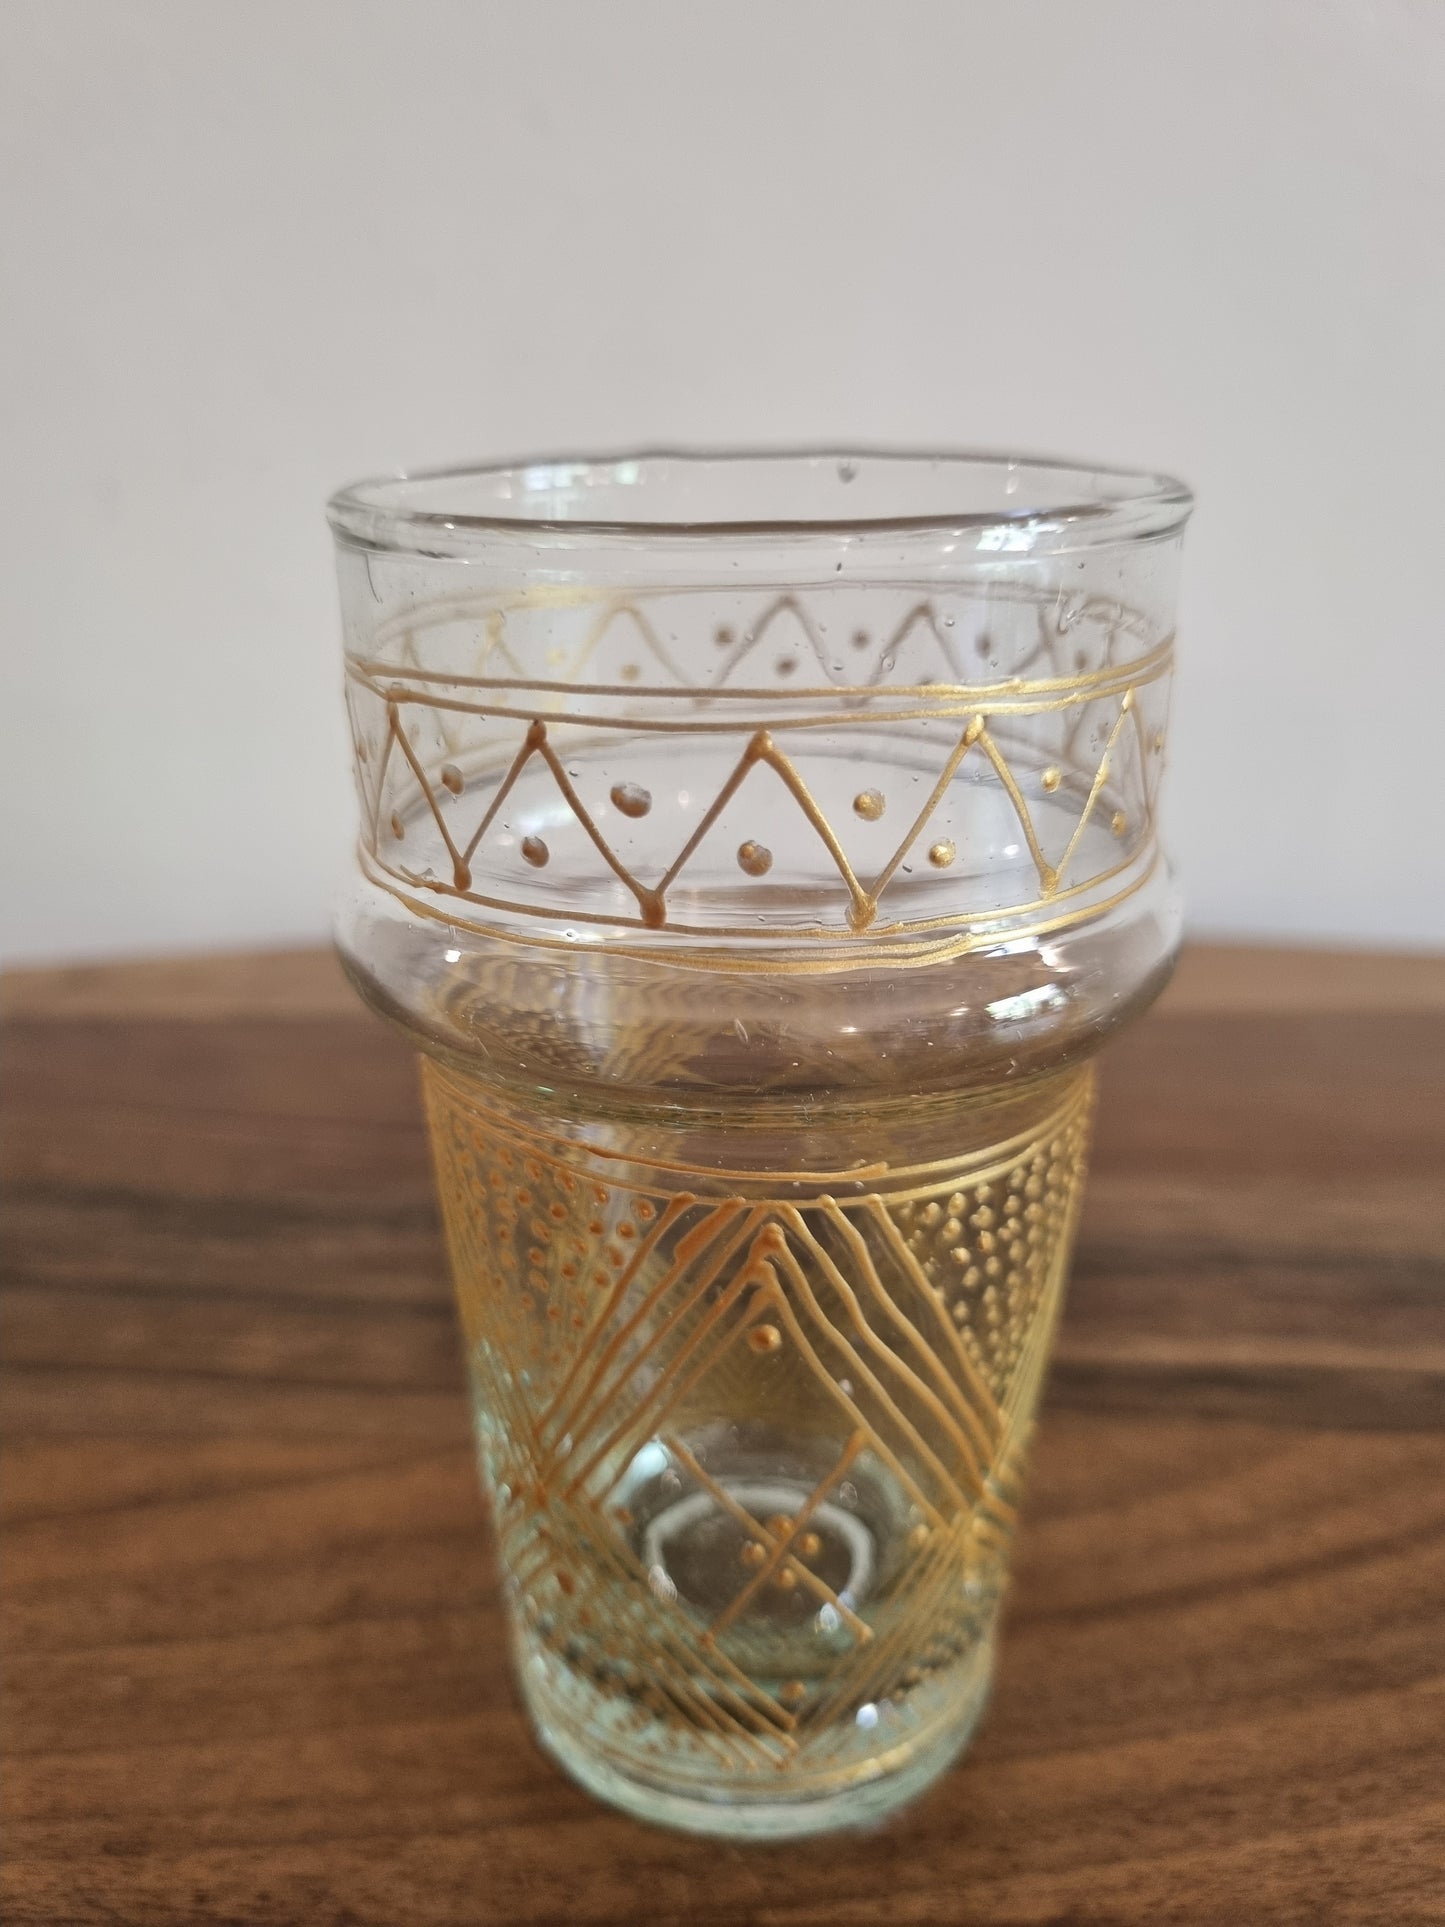 Set de 6 verres beldi marocains, avec des détails ornés et une touche de culture marocaine.